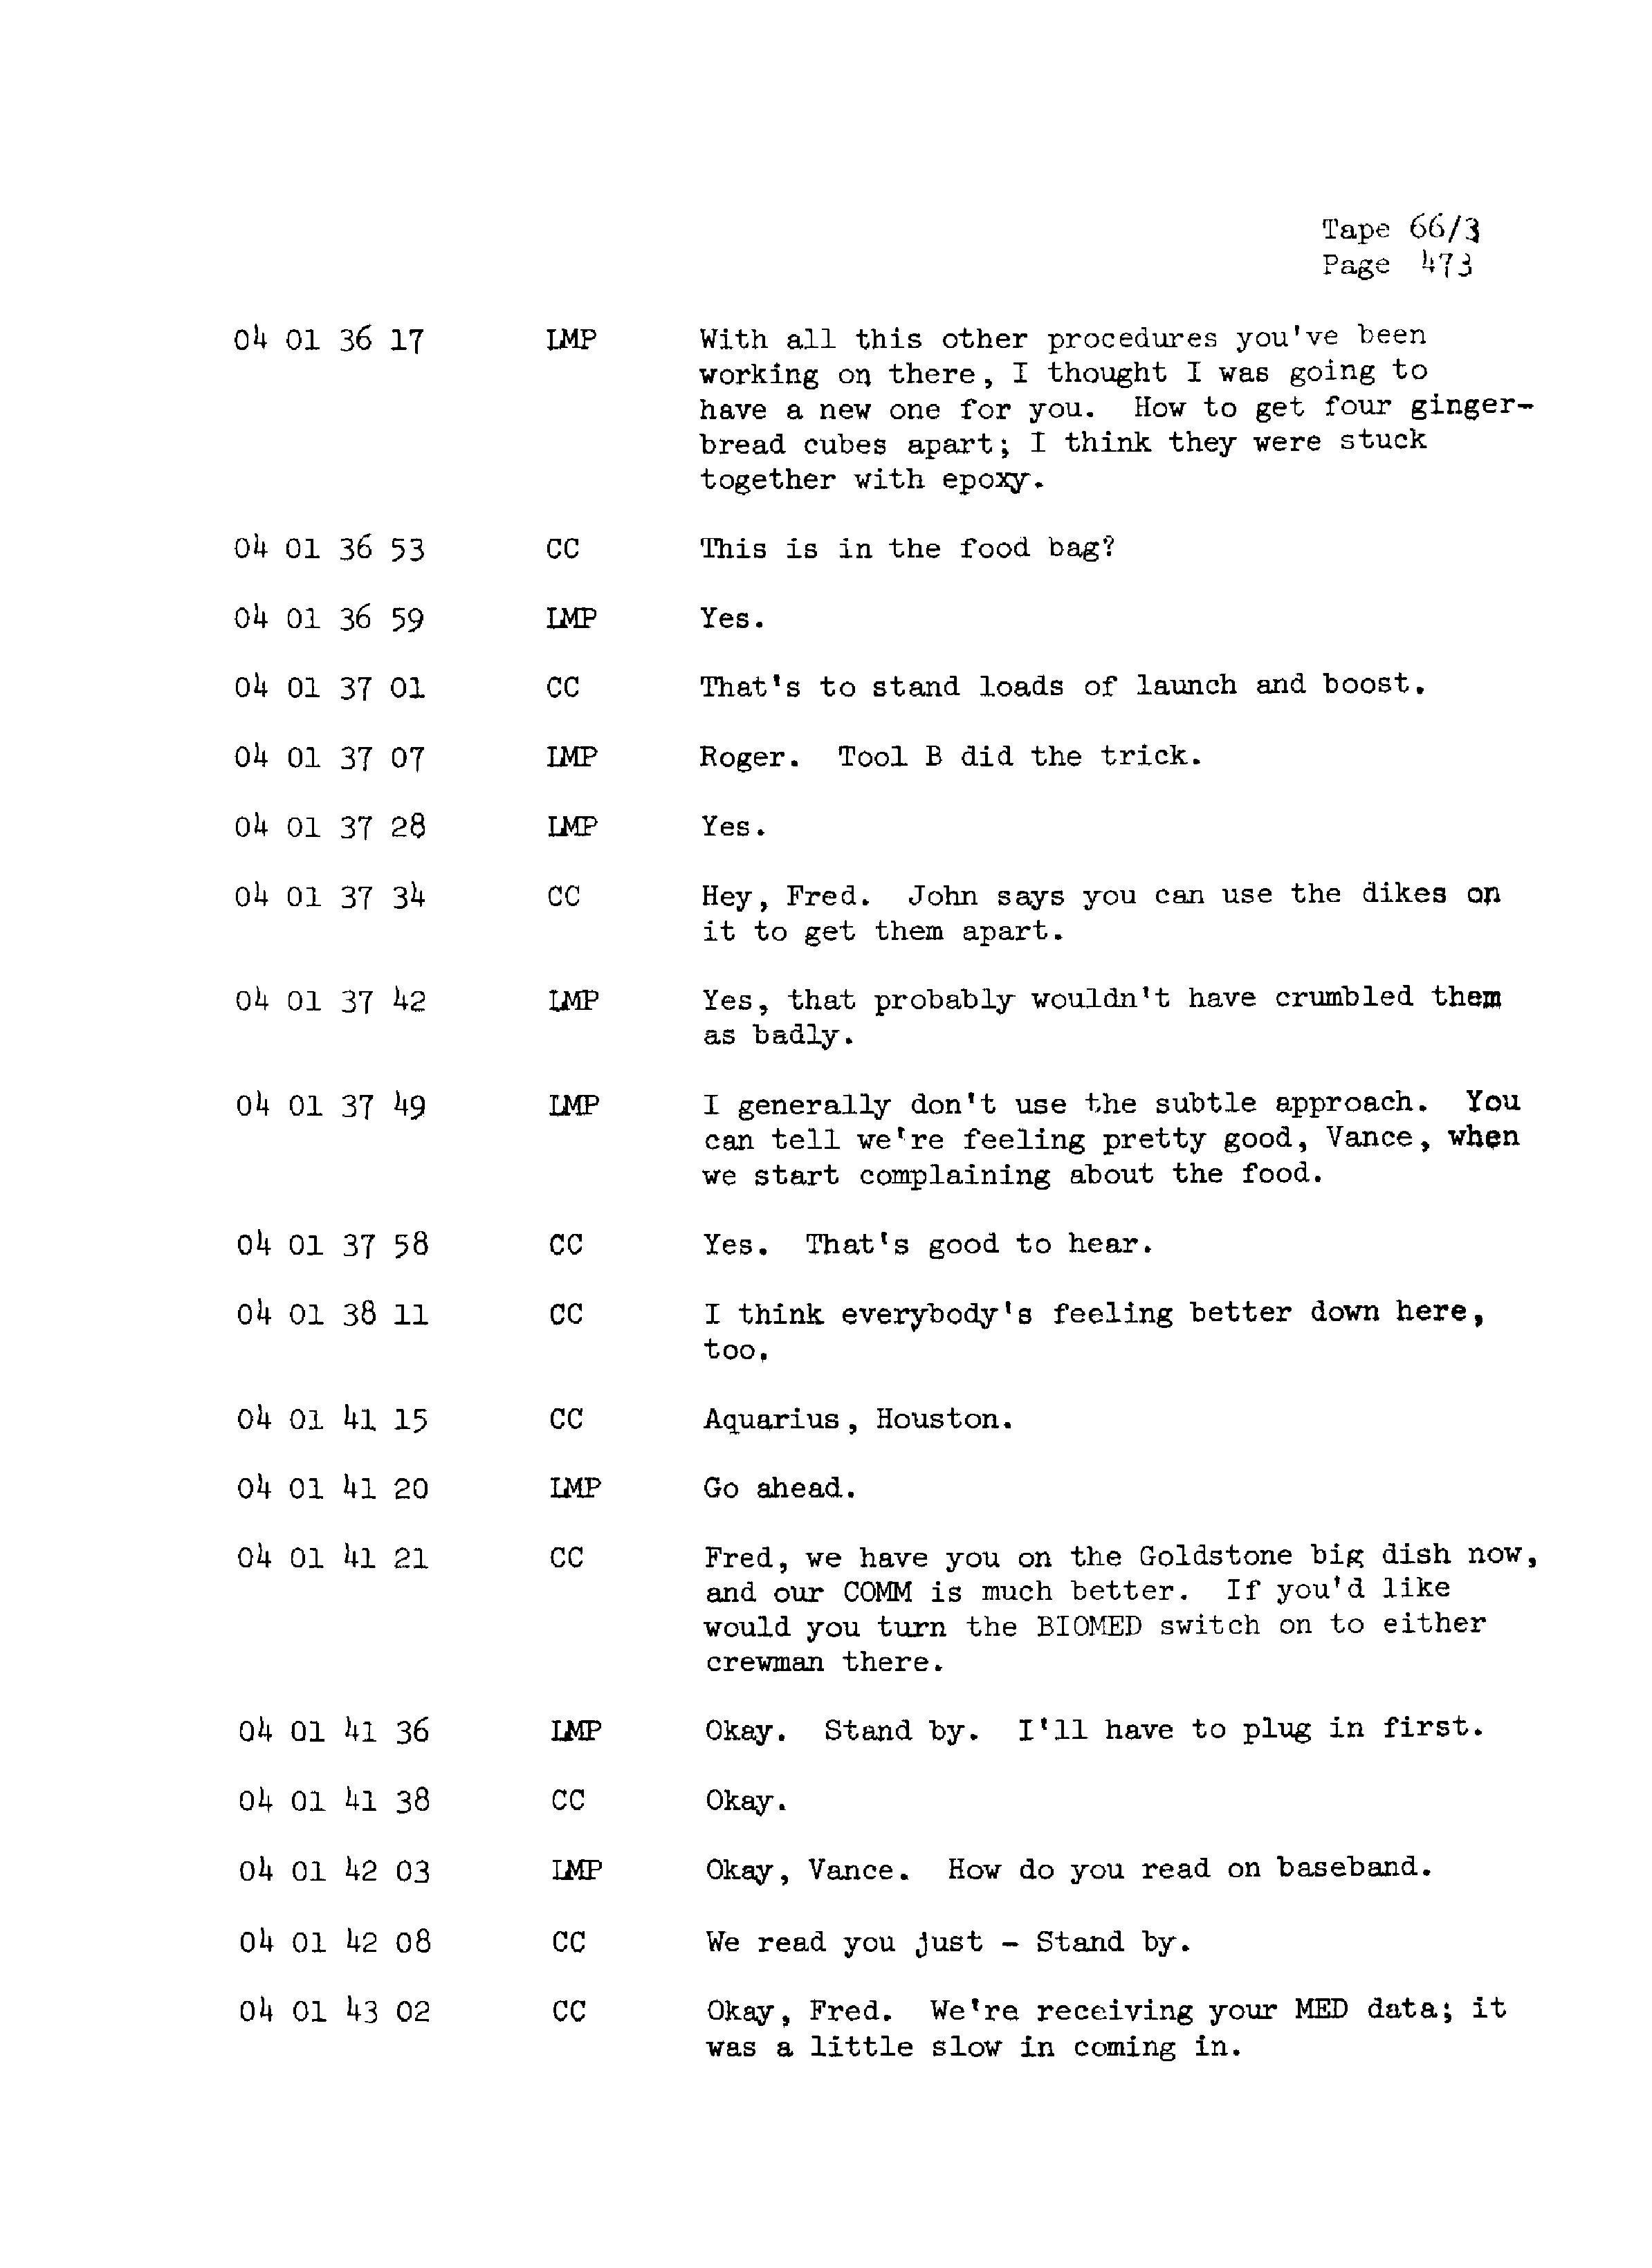 Page 480 of Apollo 13’s original transcript